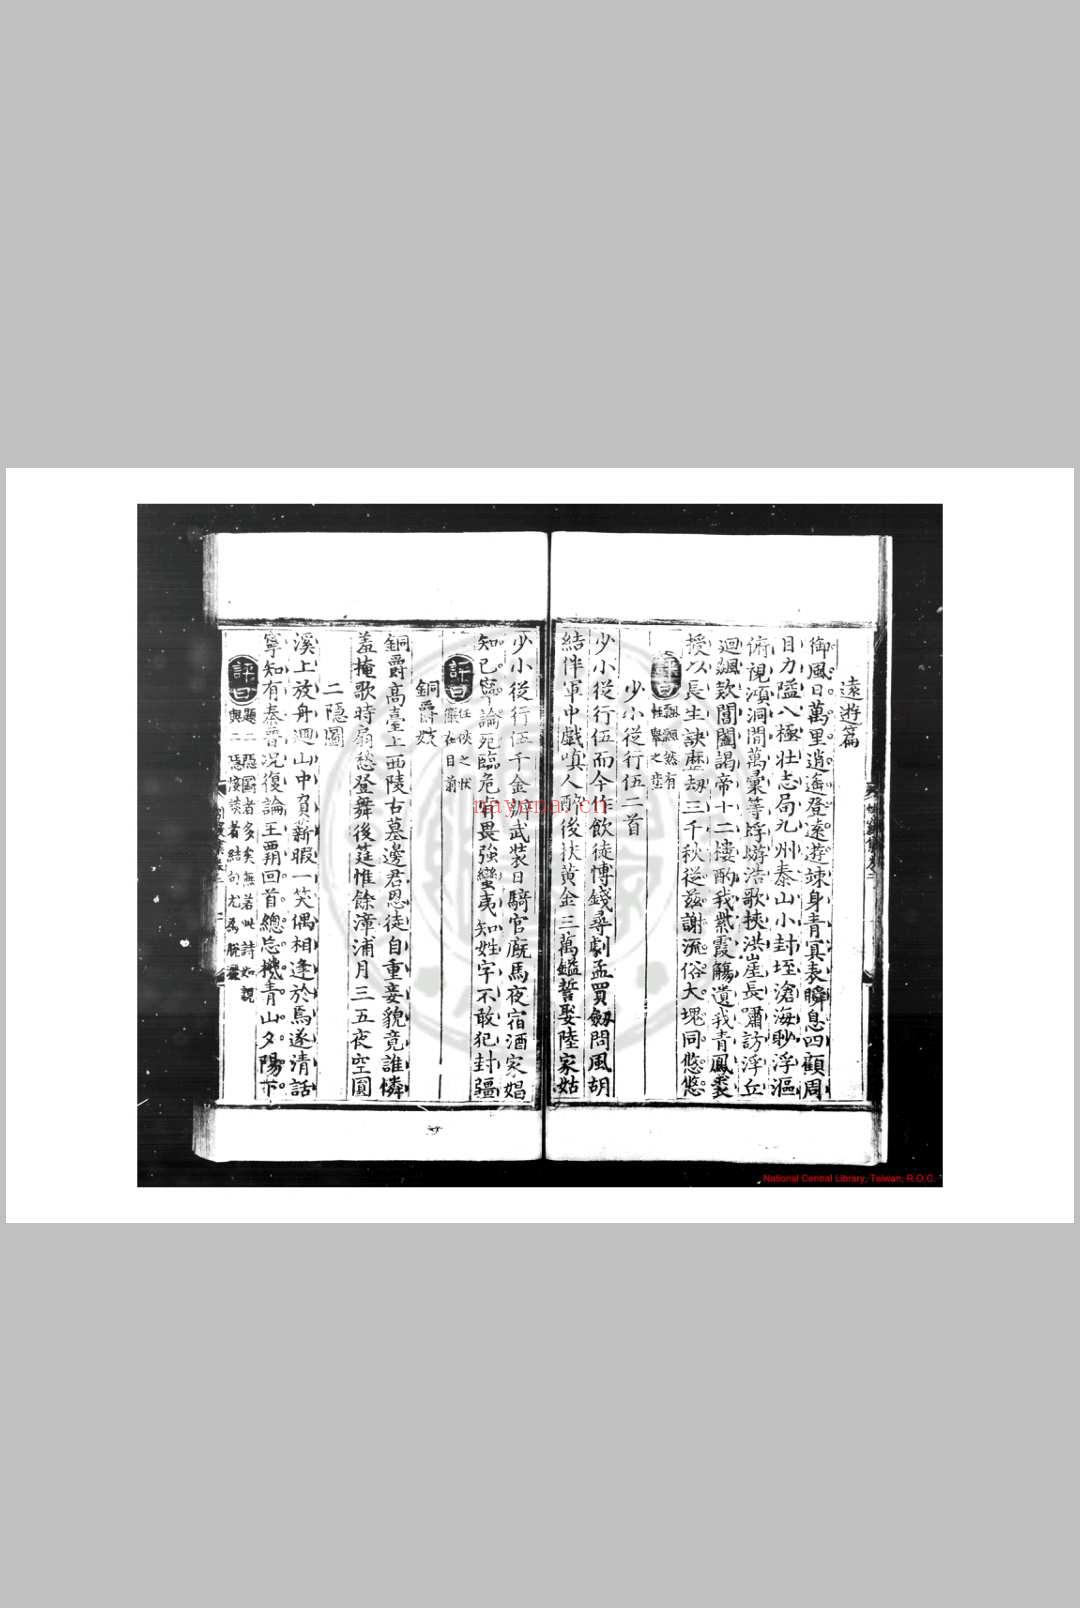 蚓窍集 (明)管时敏撰 (明)丁鹤年评 明永乐元年(1403)楚藩刊本